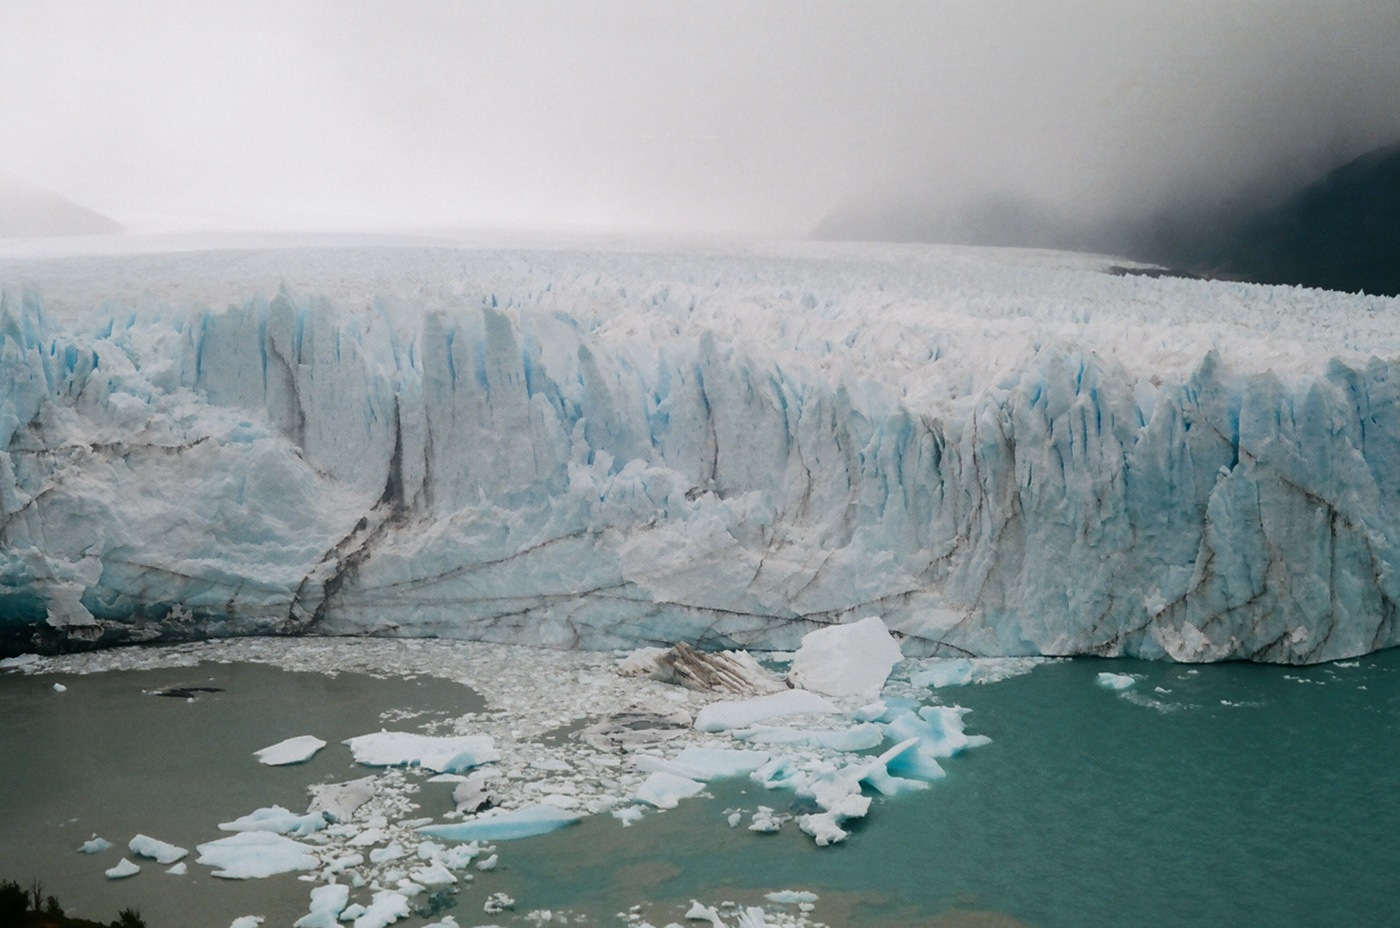 35mm 35mm film analogo argentina Fotografia fotografia analogica glaciar perito moreno